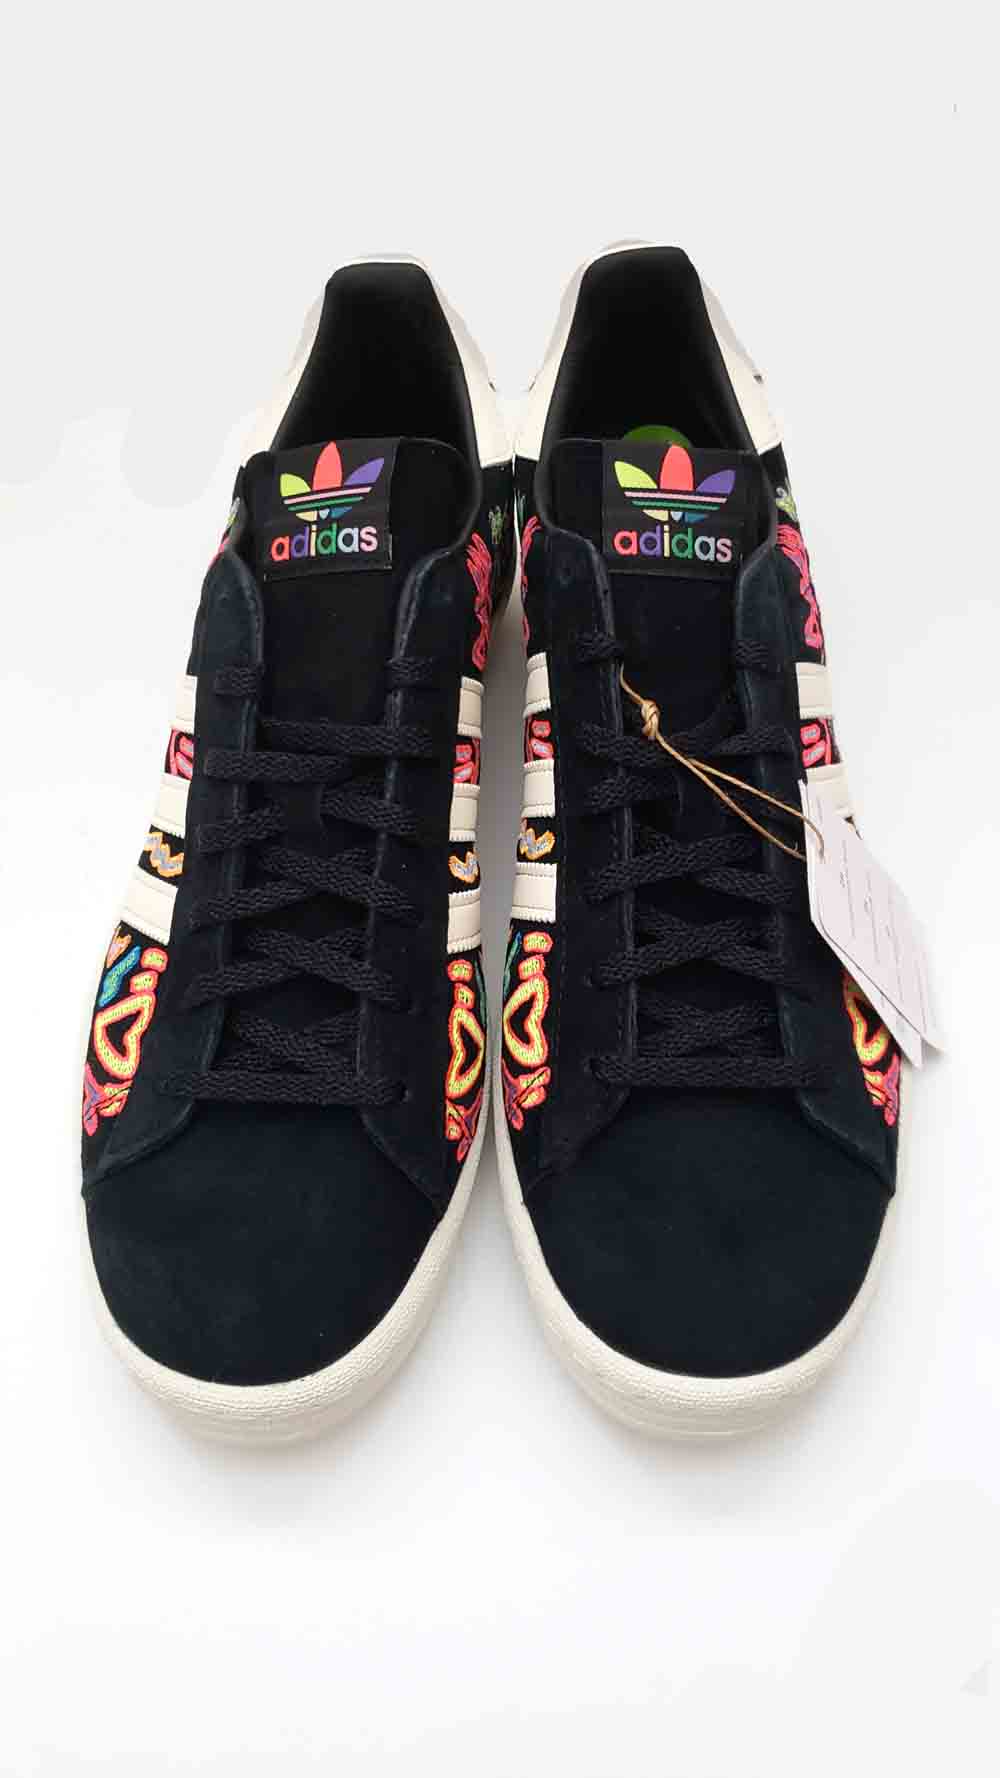 Adidas Campus 80s Pride Men Casual Skate Shoe Black Multicolor Sneaker Size 10